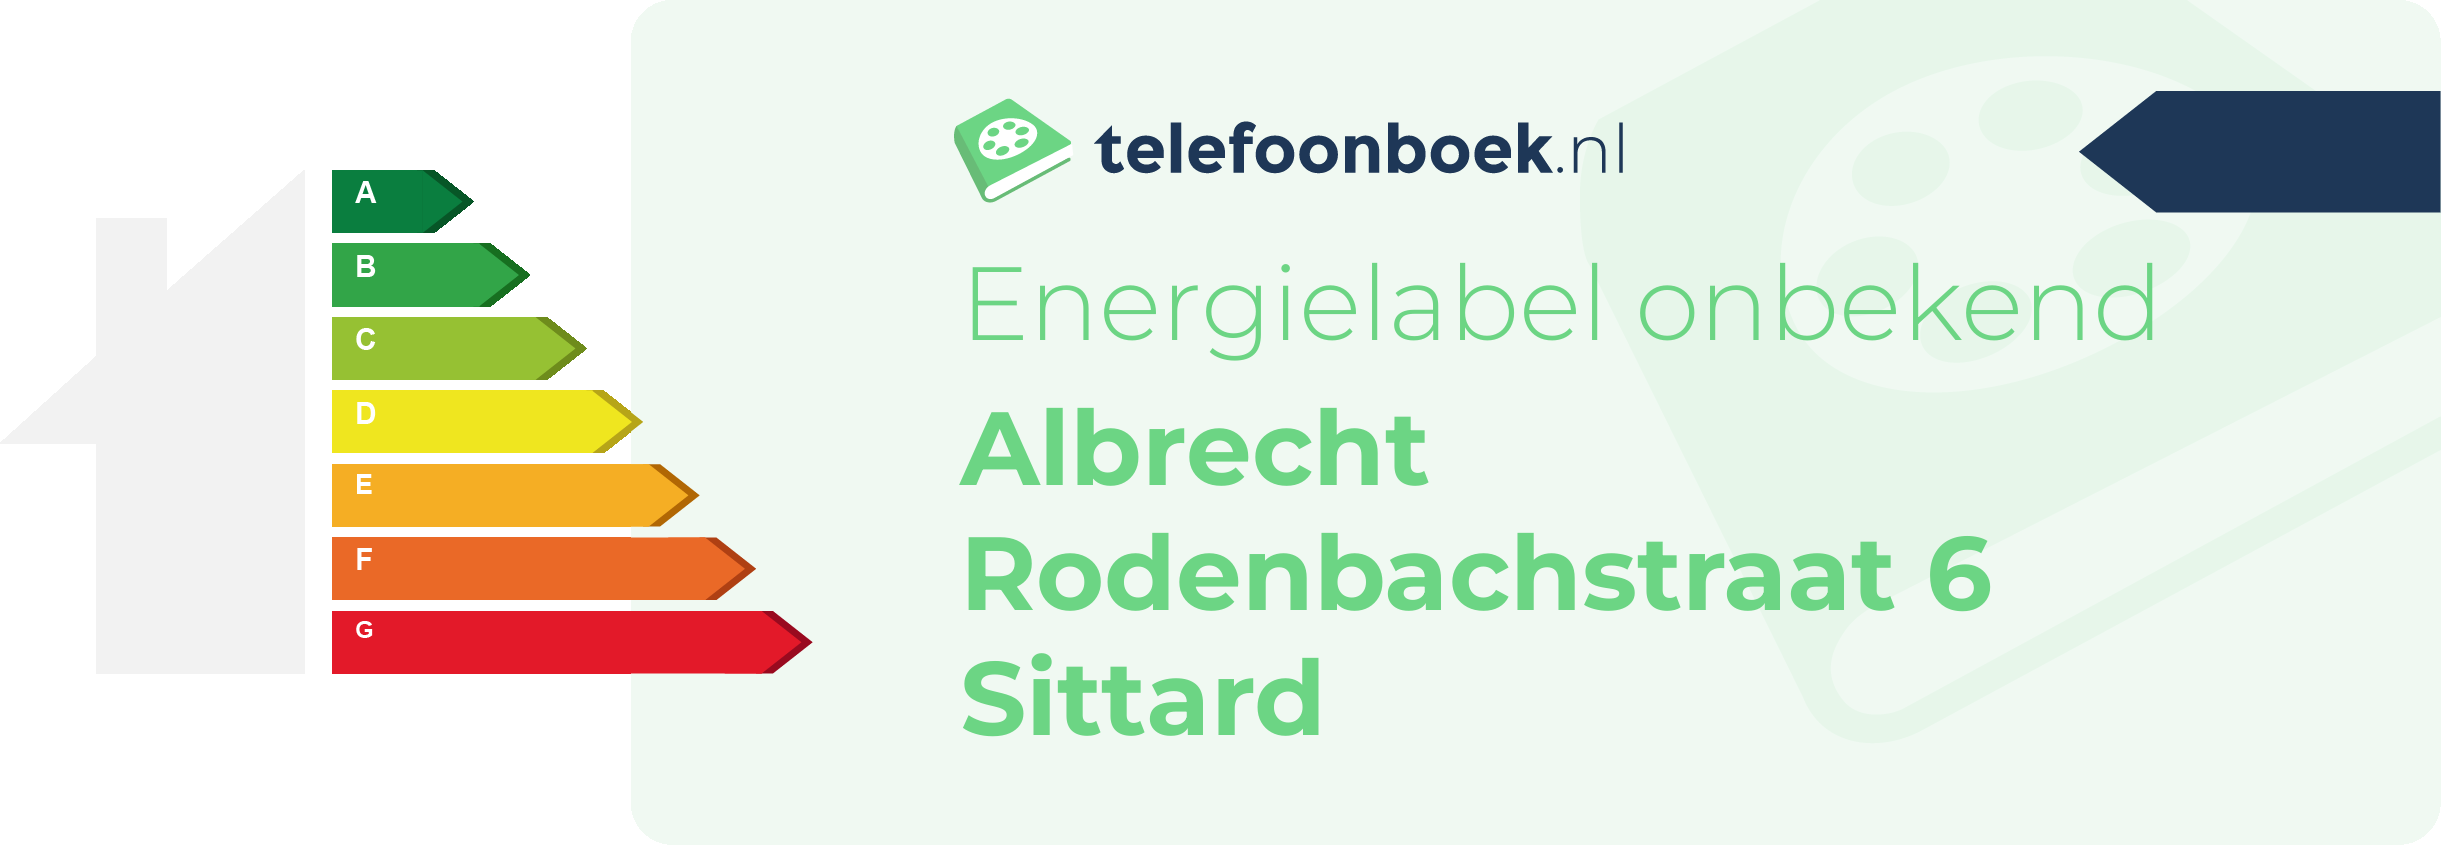 Energielabel Albrecht Rodenbachstraat 6 Sittard